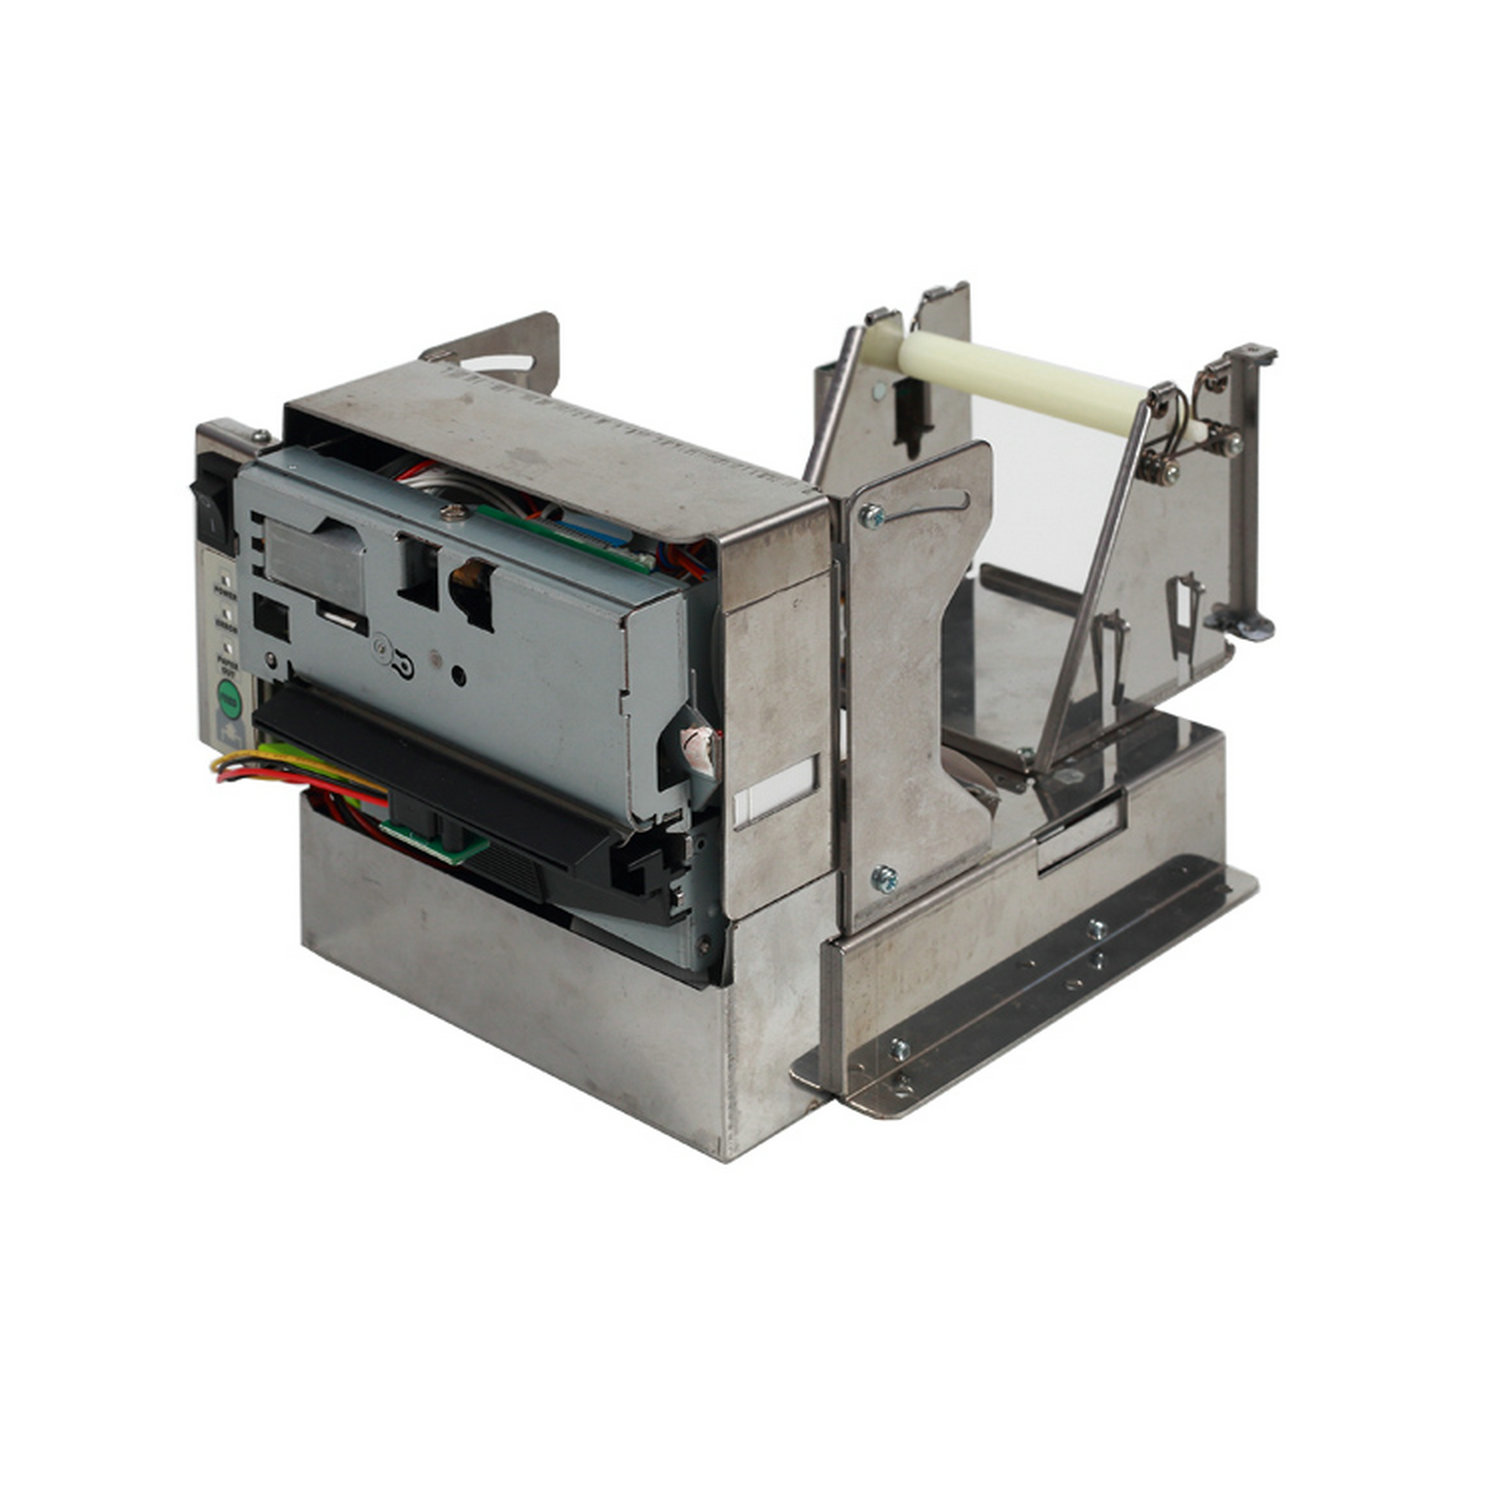 HCC-EU801 ESC/POS 80mm Kiosk 热敏二维条码收据打印机